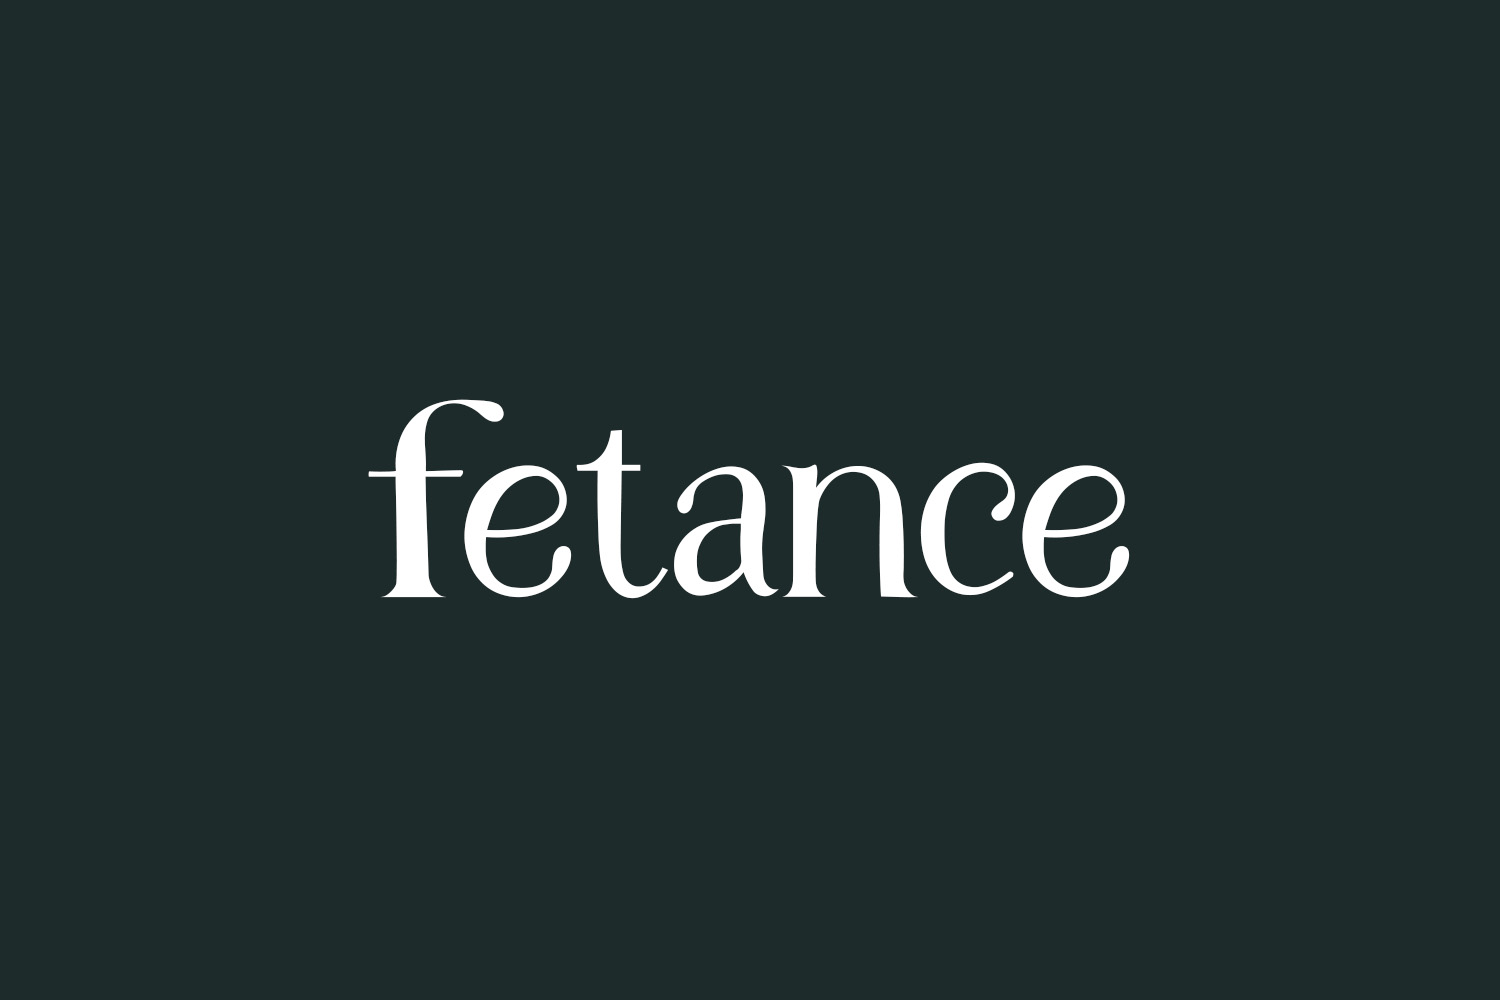 Fetance Free Font